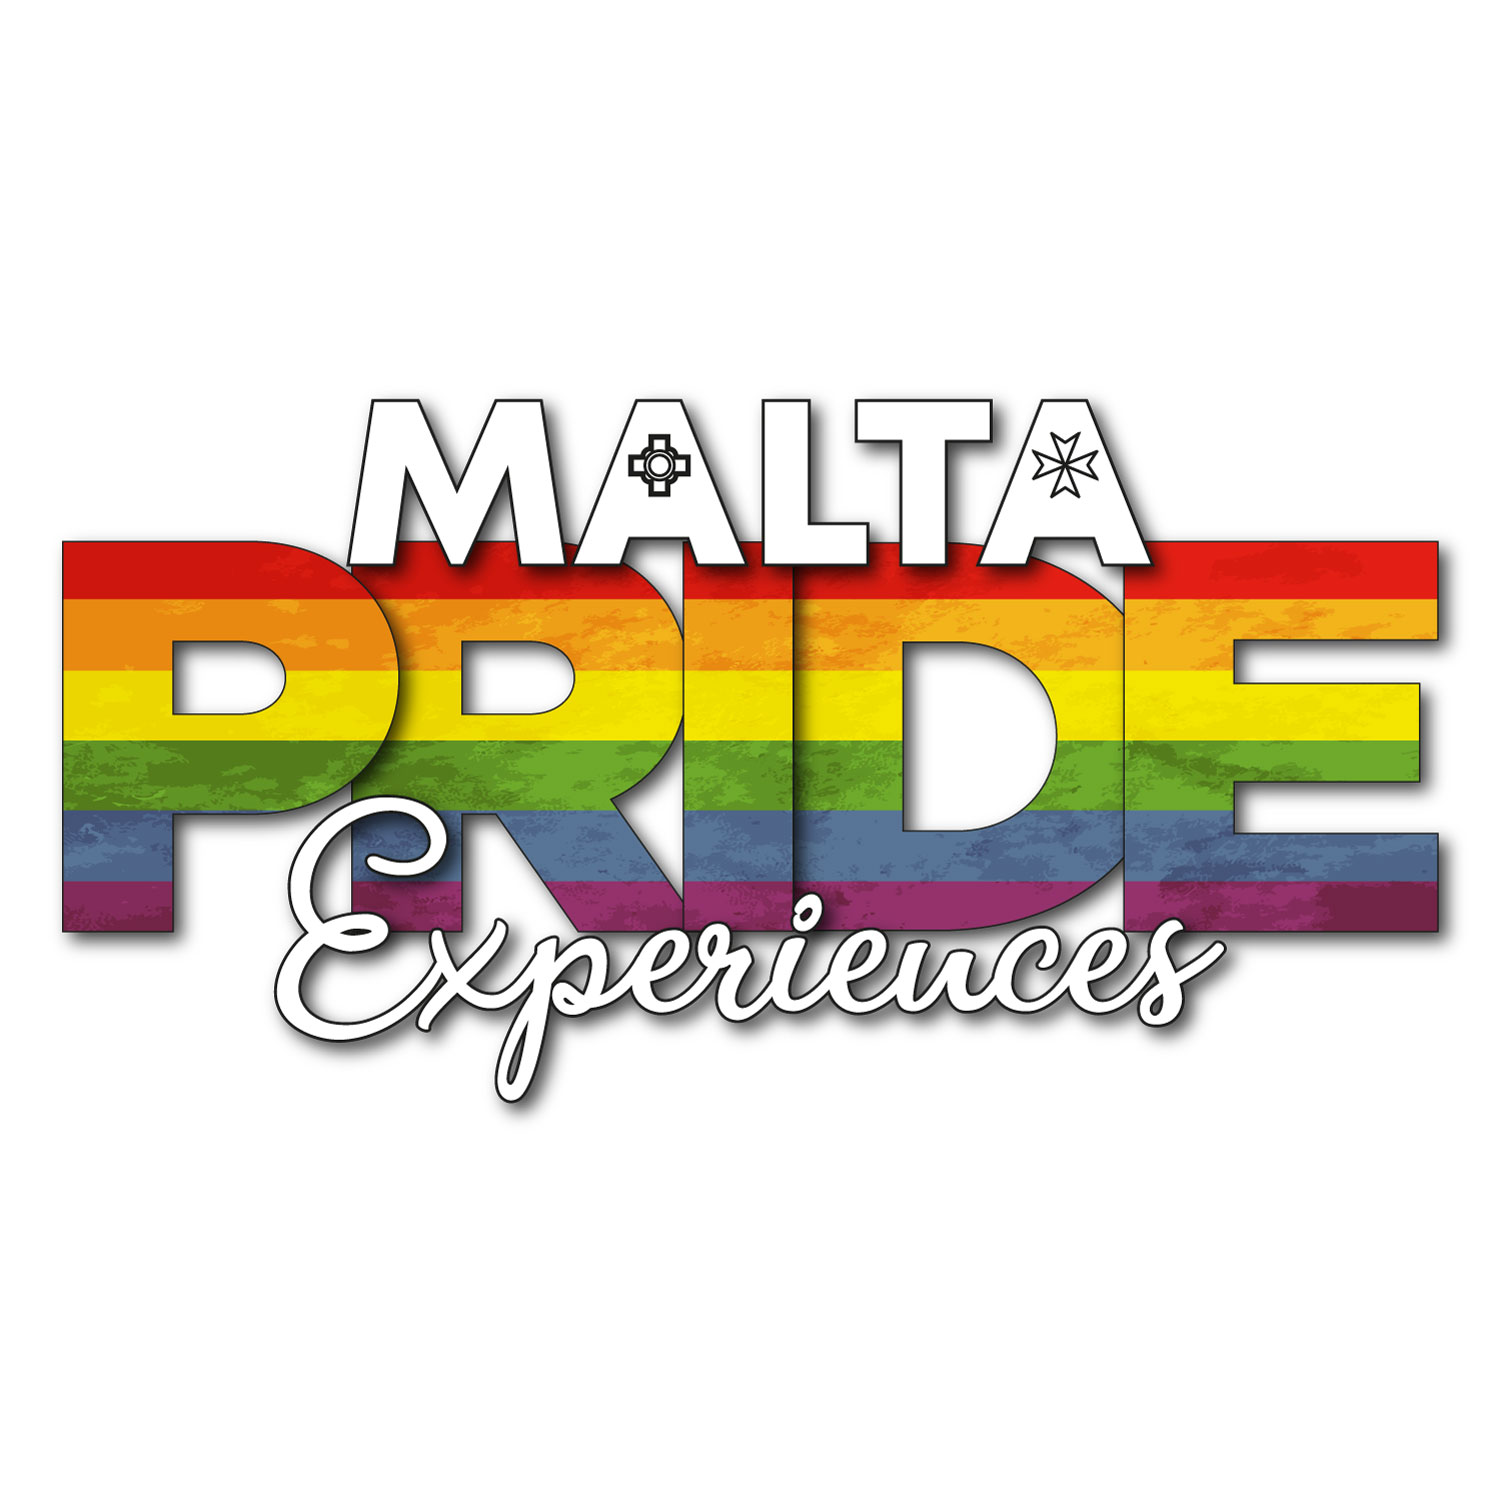 Malta Pride Experiences